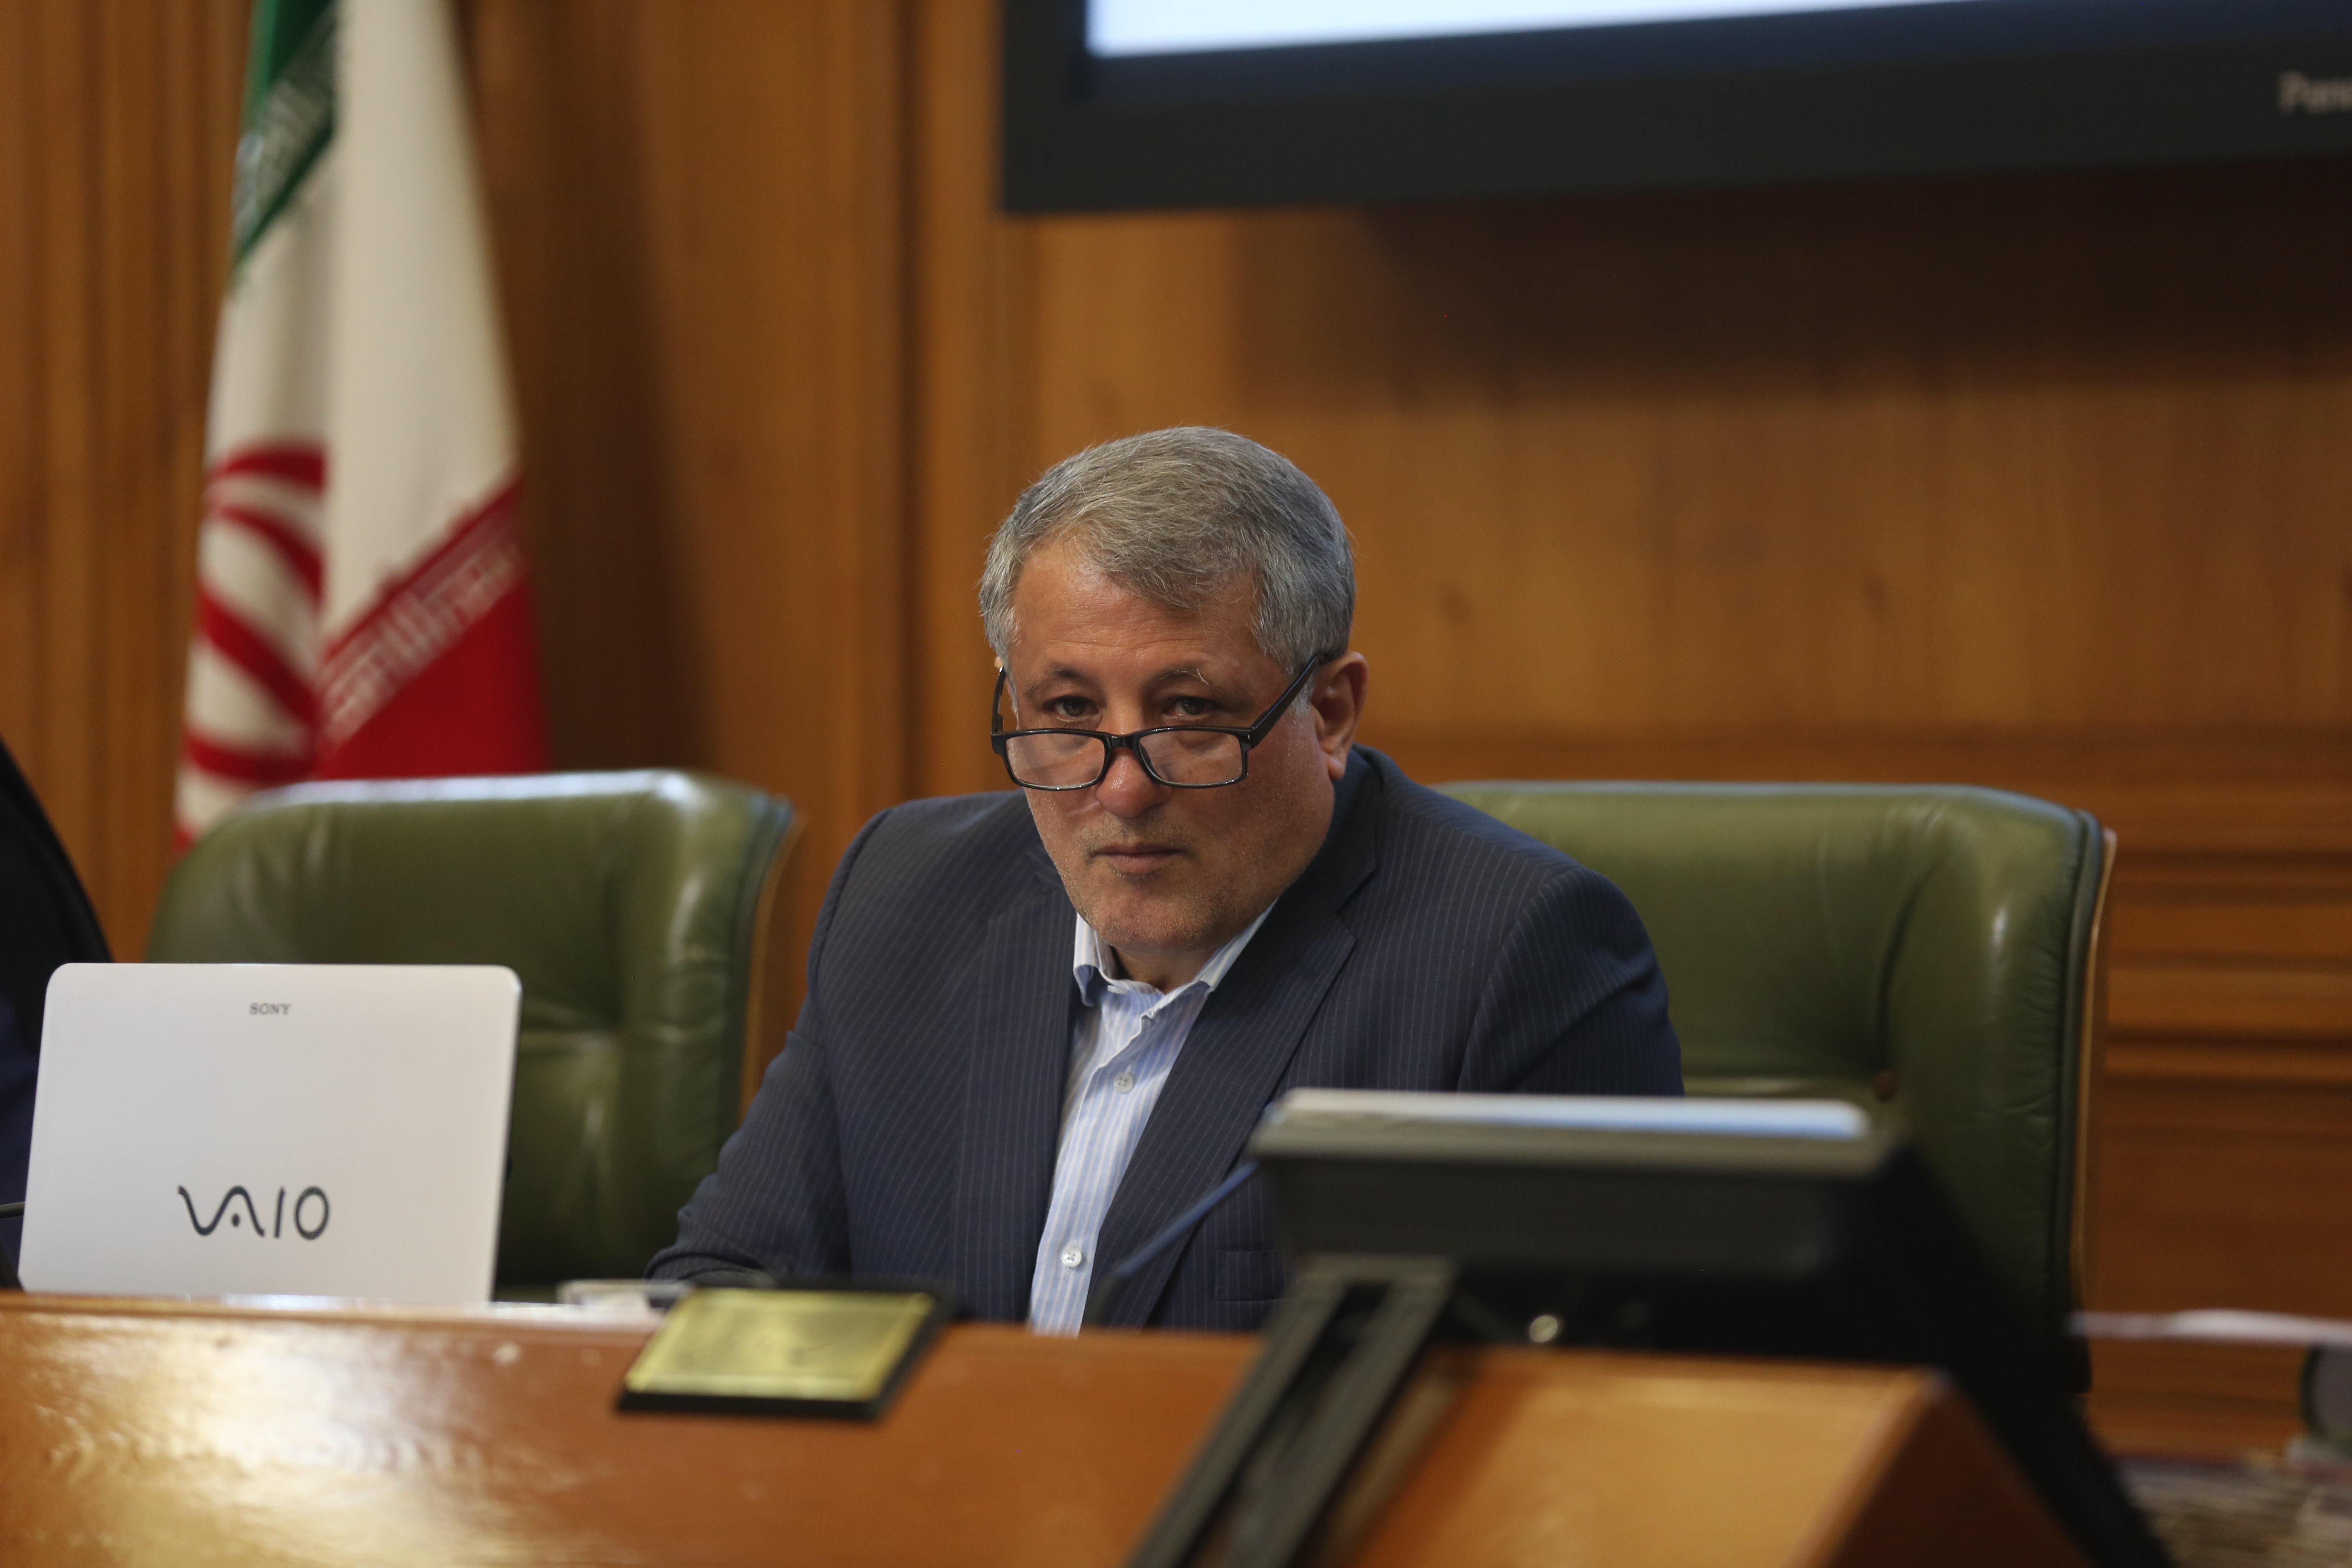 وضعیت هوای تهران افتضاح است/ موضوع واگذاری زمین های بنیاد به شورا اعلام شده بود